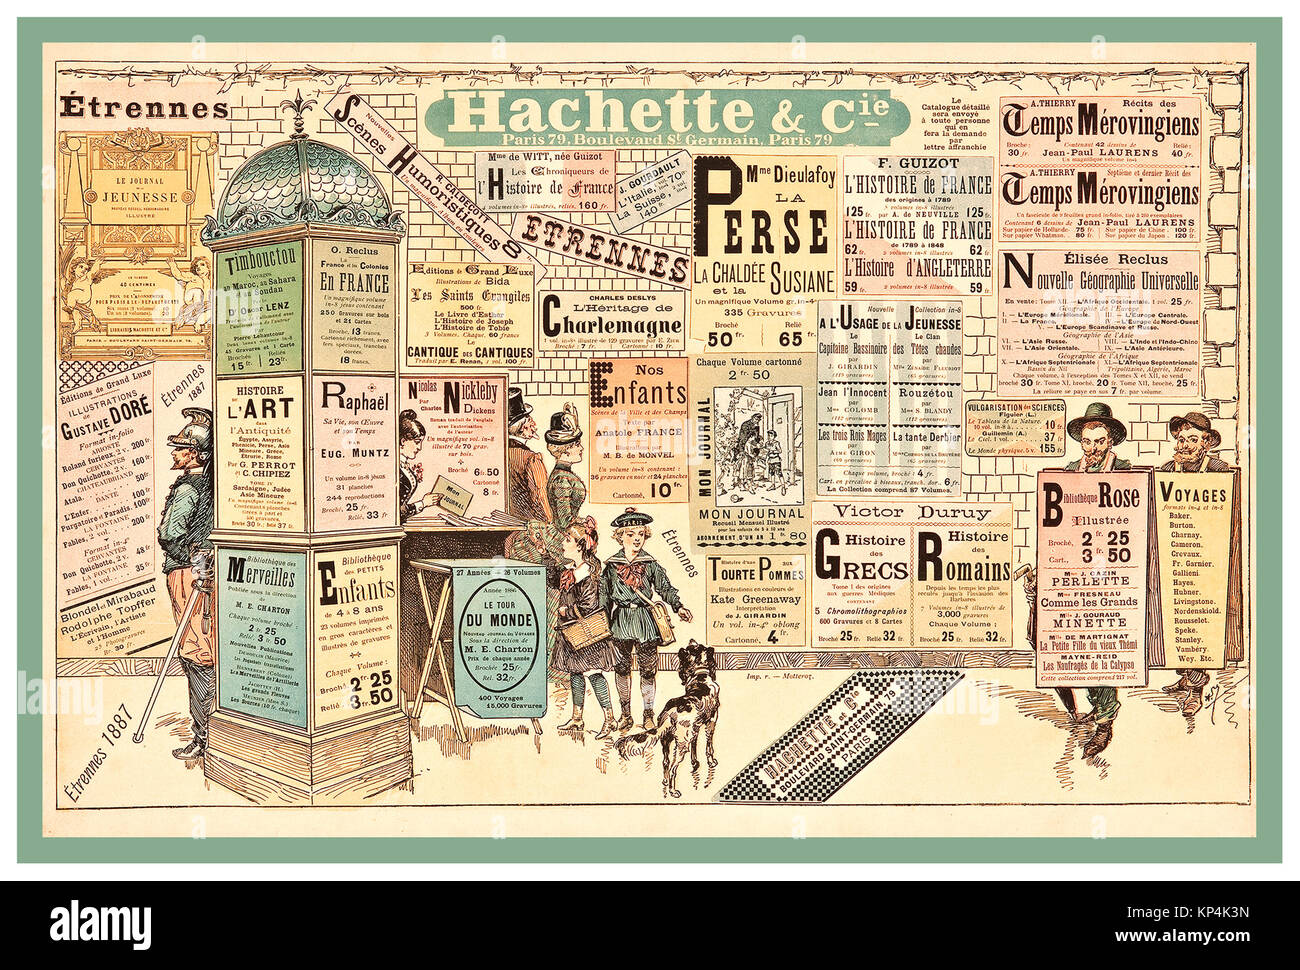 1887 Vintage französische Plakat was auf eine Vielzahl von schönen Überraschungen im Neuen Jahr Geschenke von Hachette und Co Paris Frankreich Stockfoto